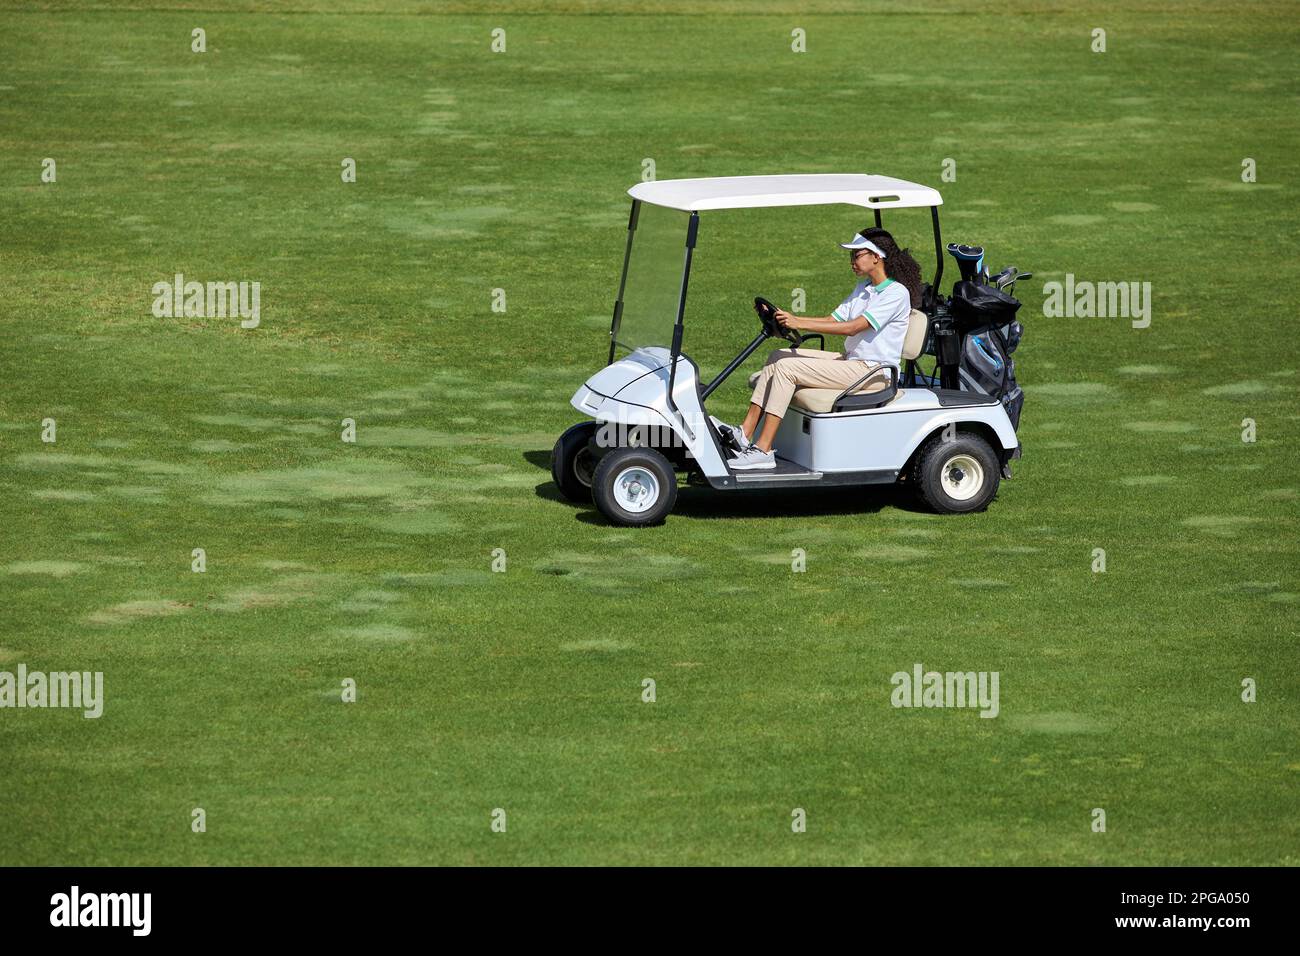 Großer Blickwinkel auf eine junge Frau, die einen Golfwagen auf einem grünen Feld im Sonnenlicht fährt, Kopierraum Stockfoto